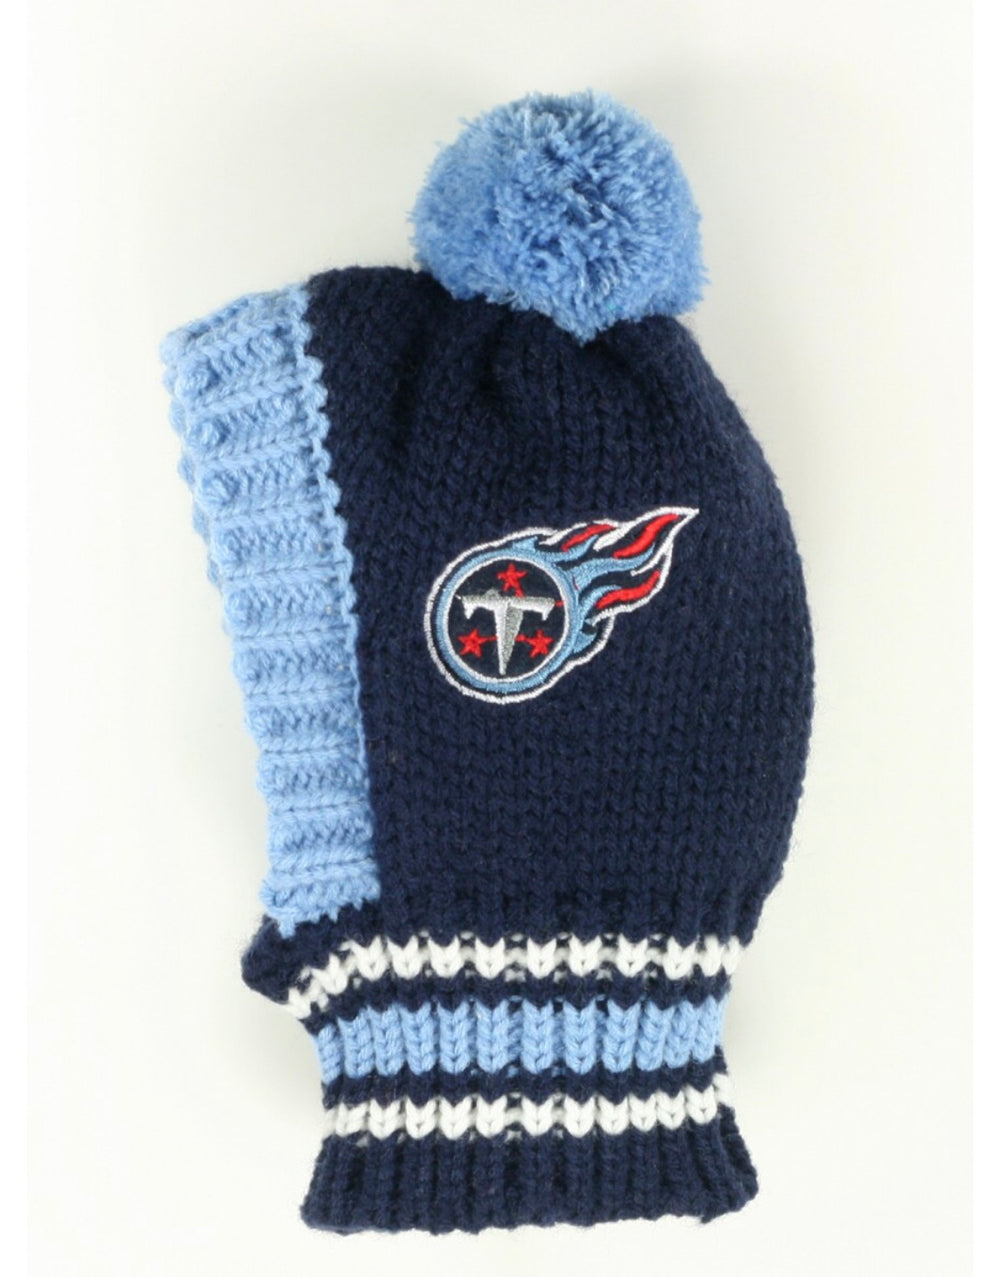 NFL Knit Hat - Titans